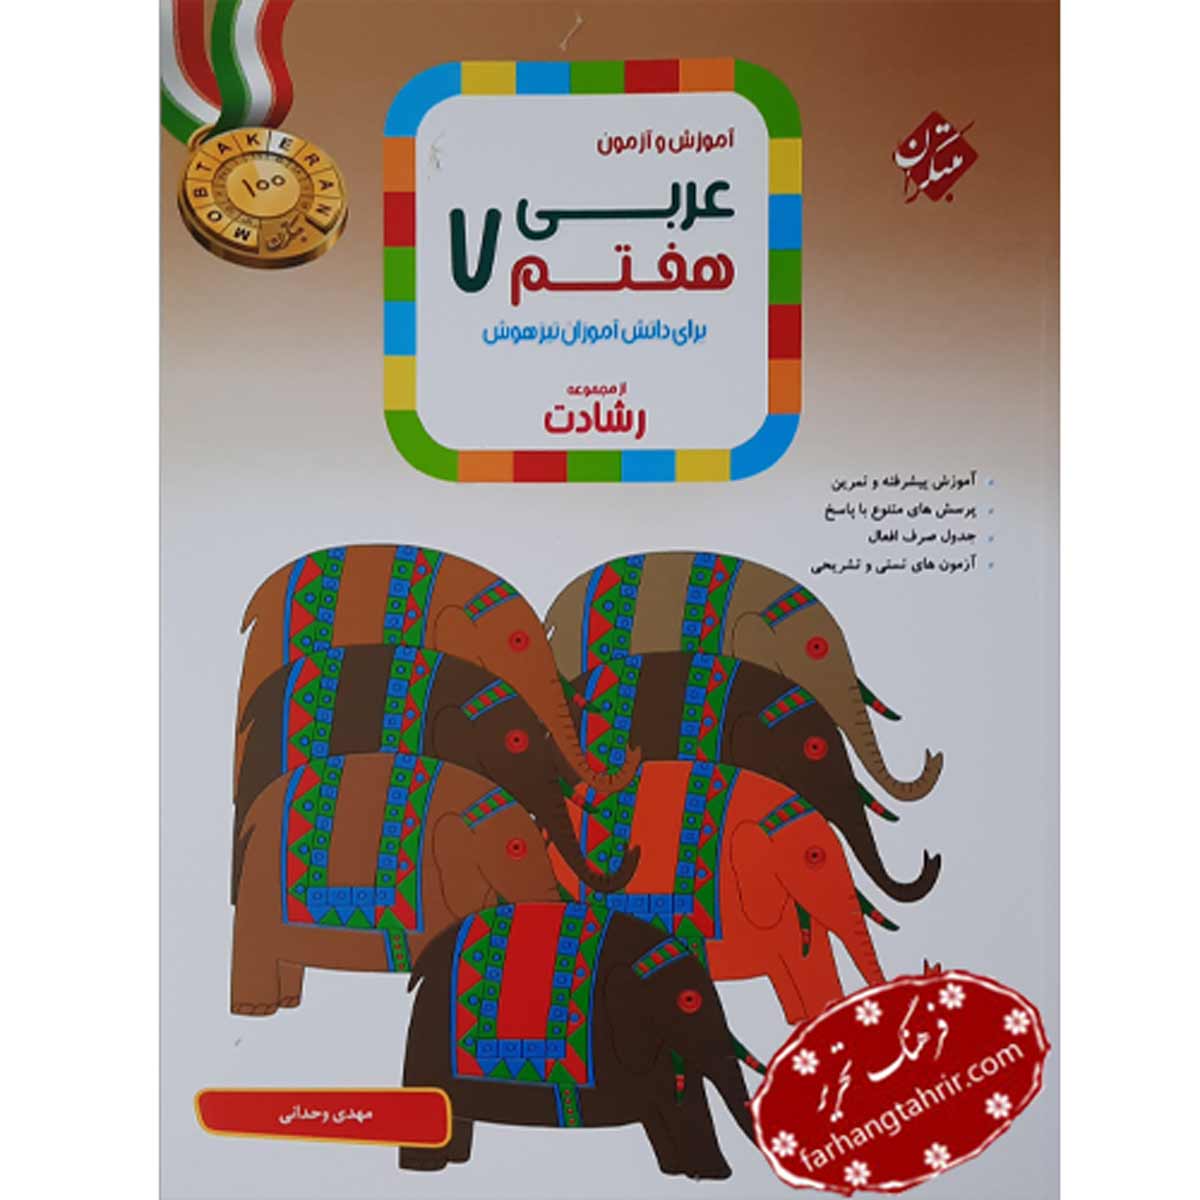 آموزش و آزمون عربی هفتم از مجموعه رشادت مبتکران